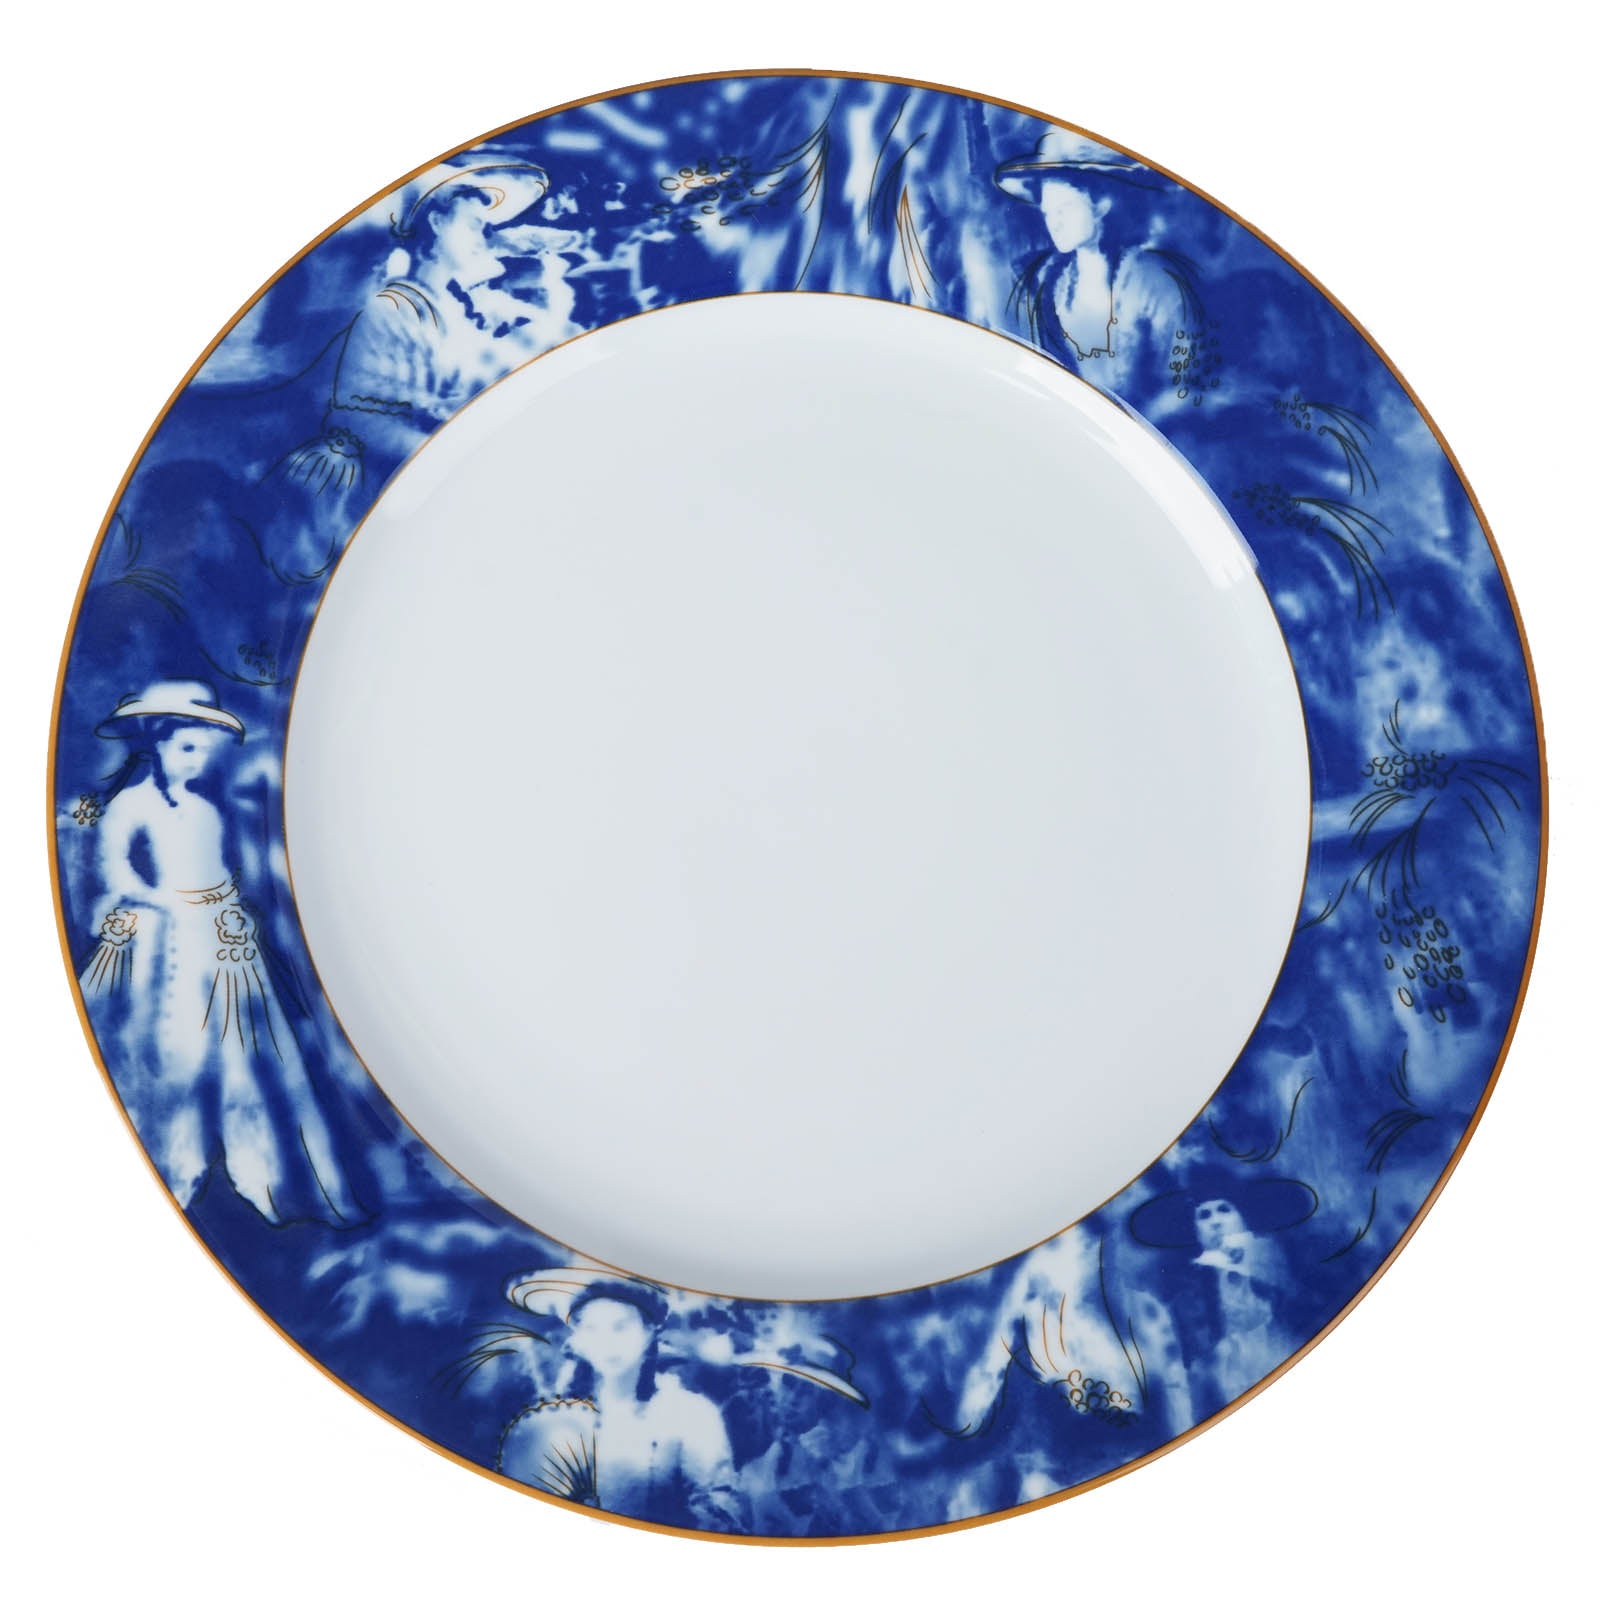 https://www.efavormart.com/cdn/shop/products/White-Blue-Break-Resistant-Porcelain-Dinner-Plates.jpg?v=1689405618